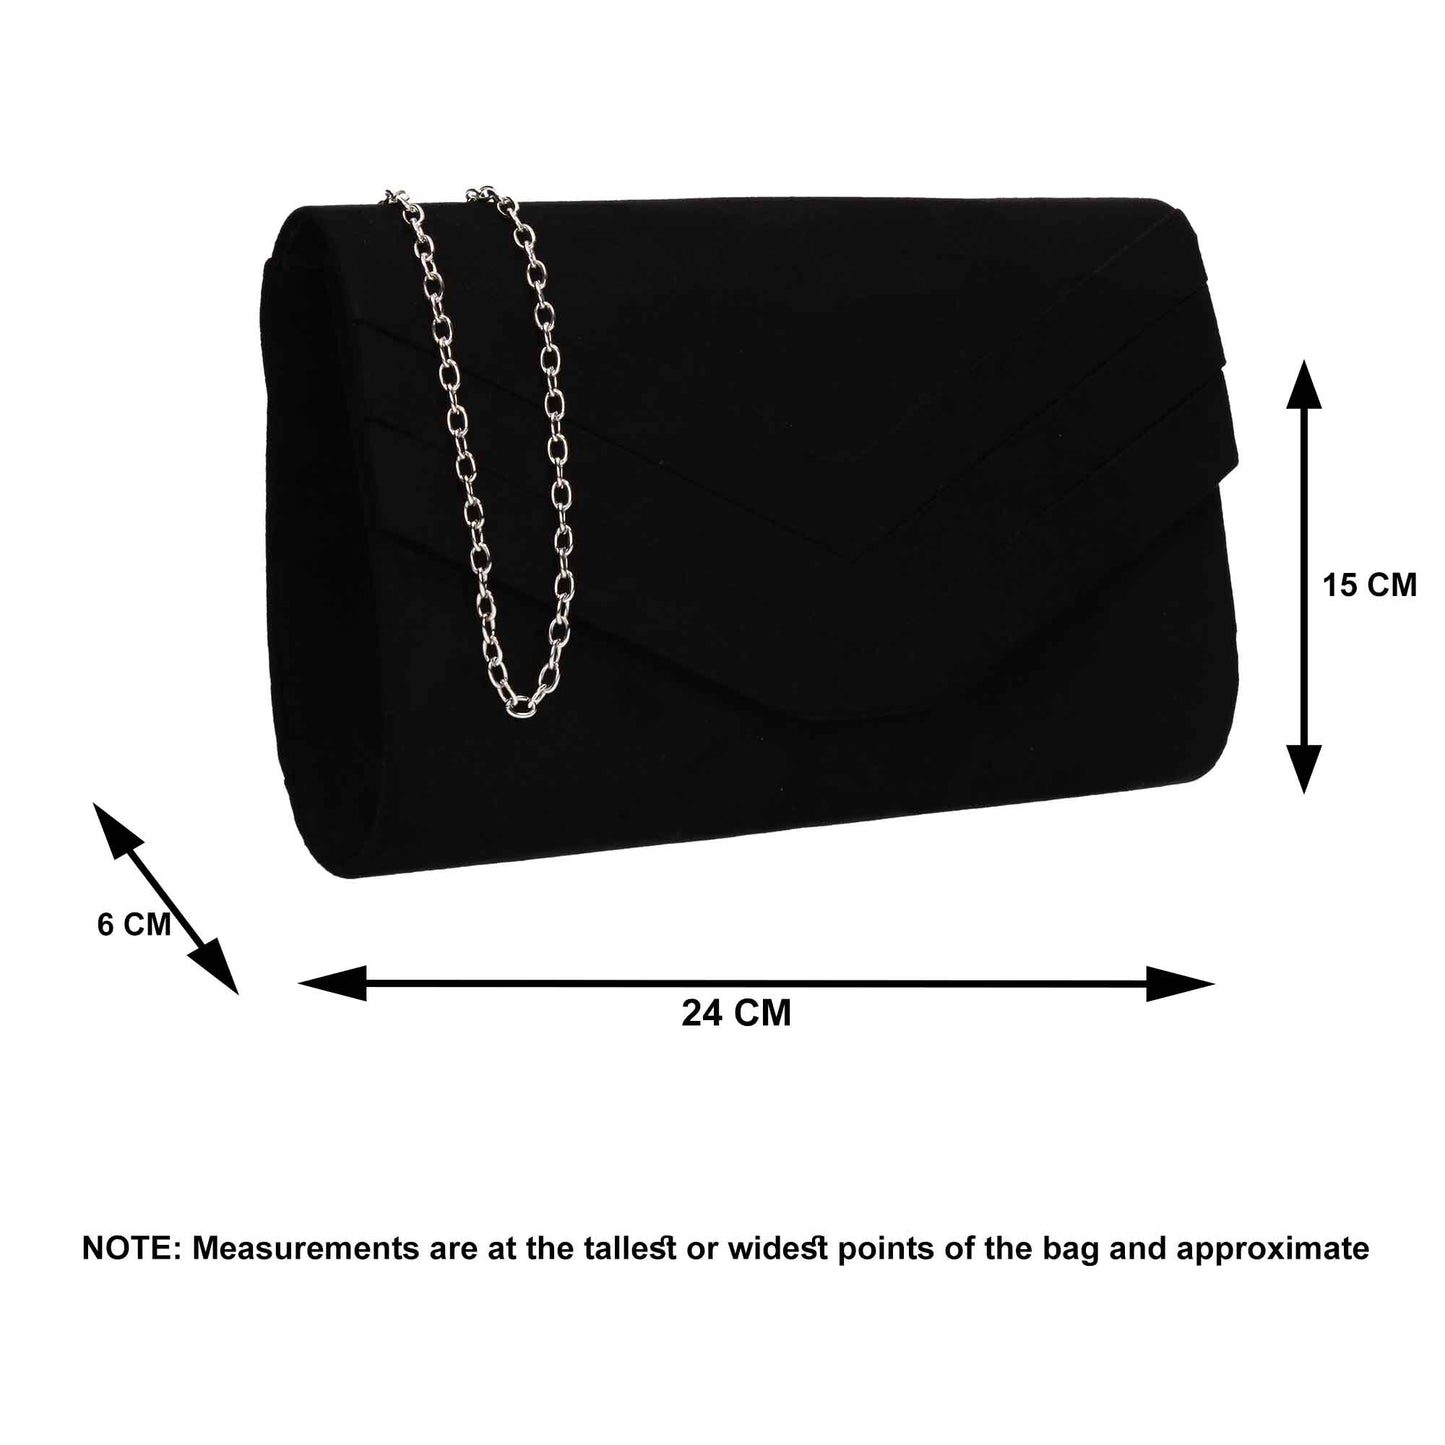 SWANKYSWANS Samantha V Detail Clutch Bag Indigo Cute Cheap Clutch Bag For Weddings School and Work